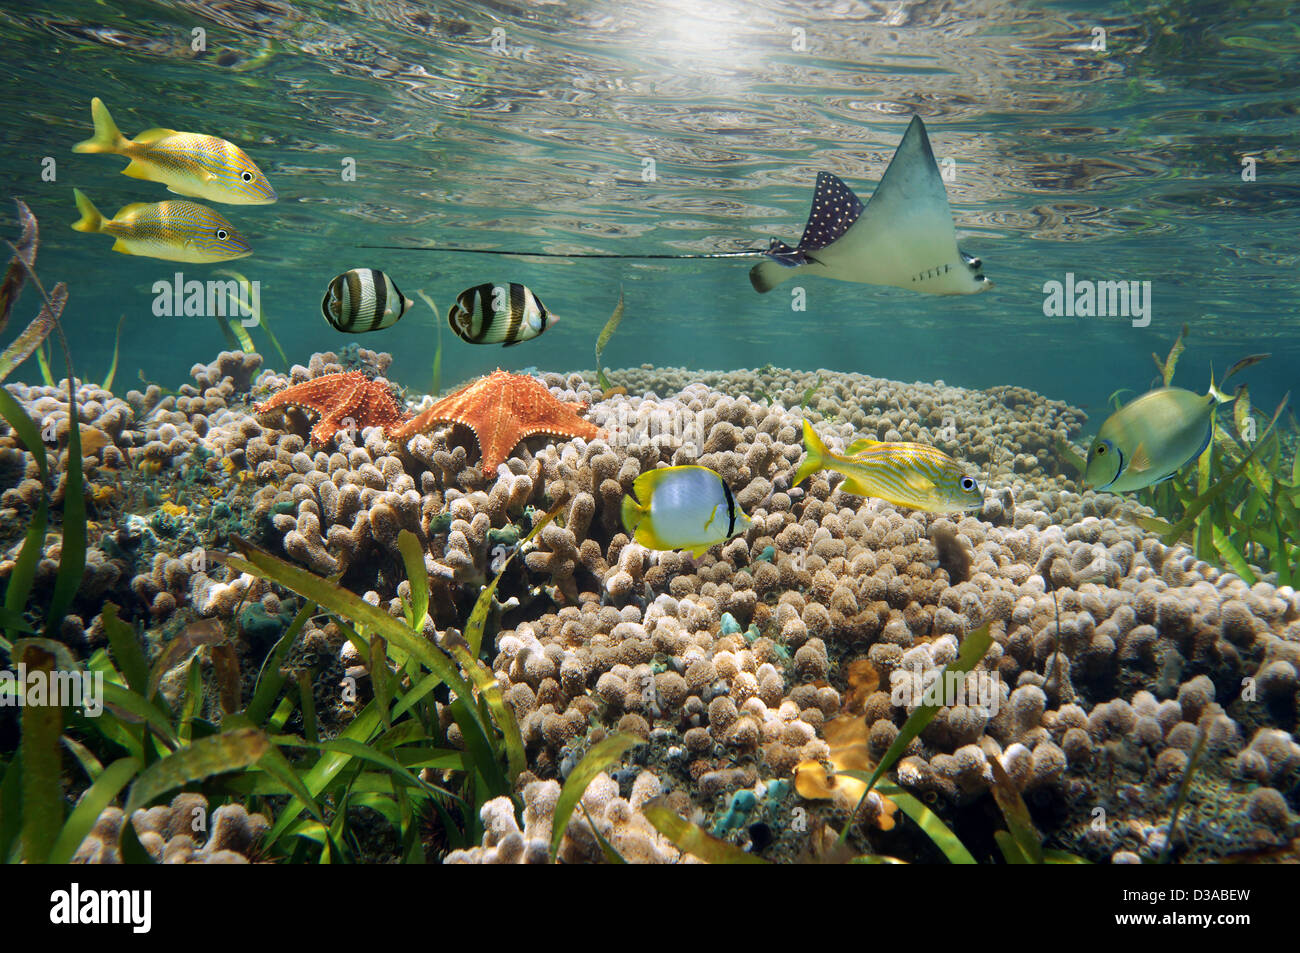 La vie dans un sous-marins des récifs coralliens peu profonds avec des poissons tropicaux, étoiles de mer et un eagle ray, mer des Caraïbes Banque D'Images